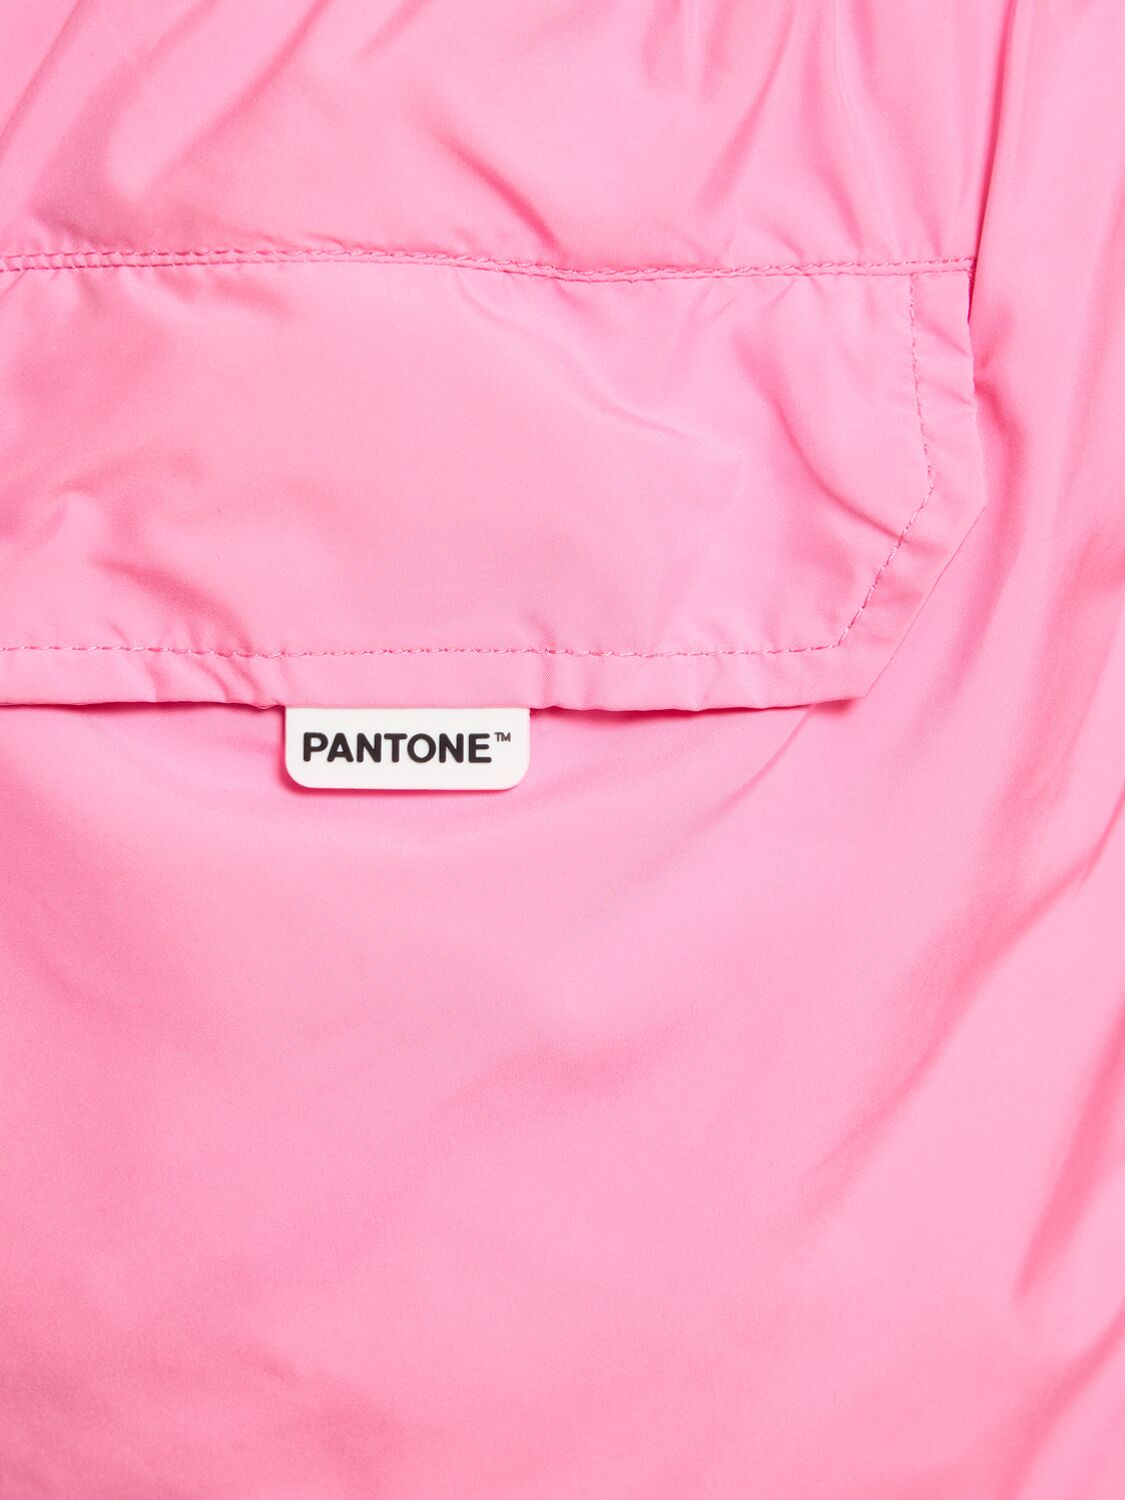 PANTONE超轻科技织物沙滩裤